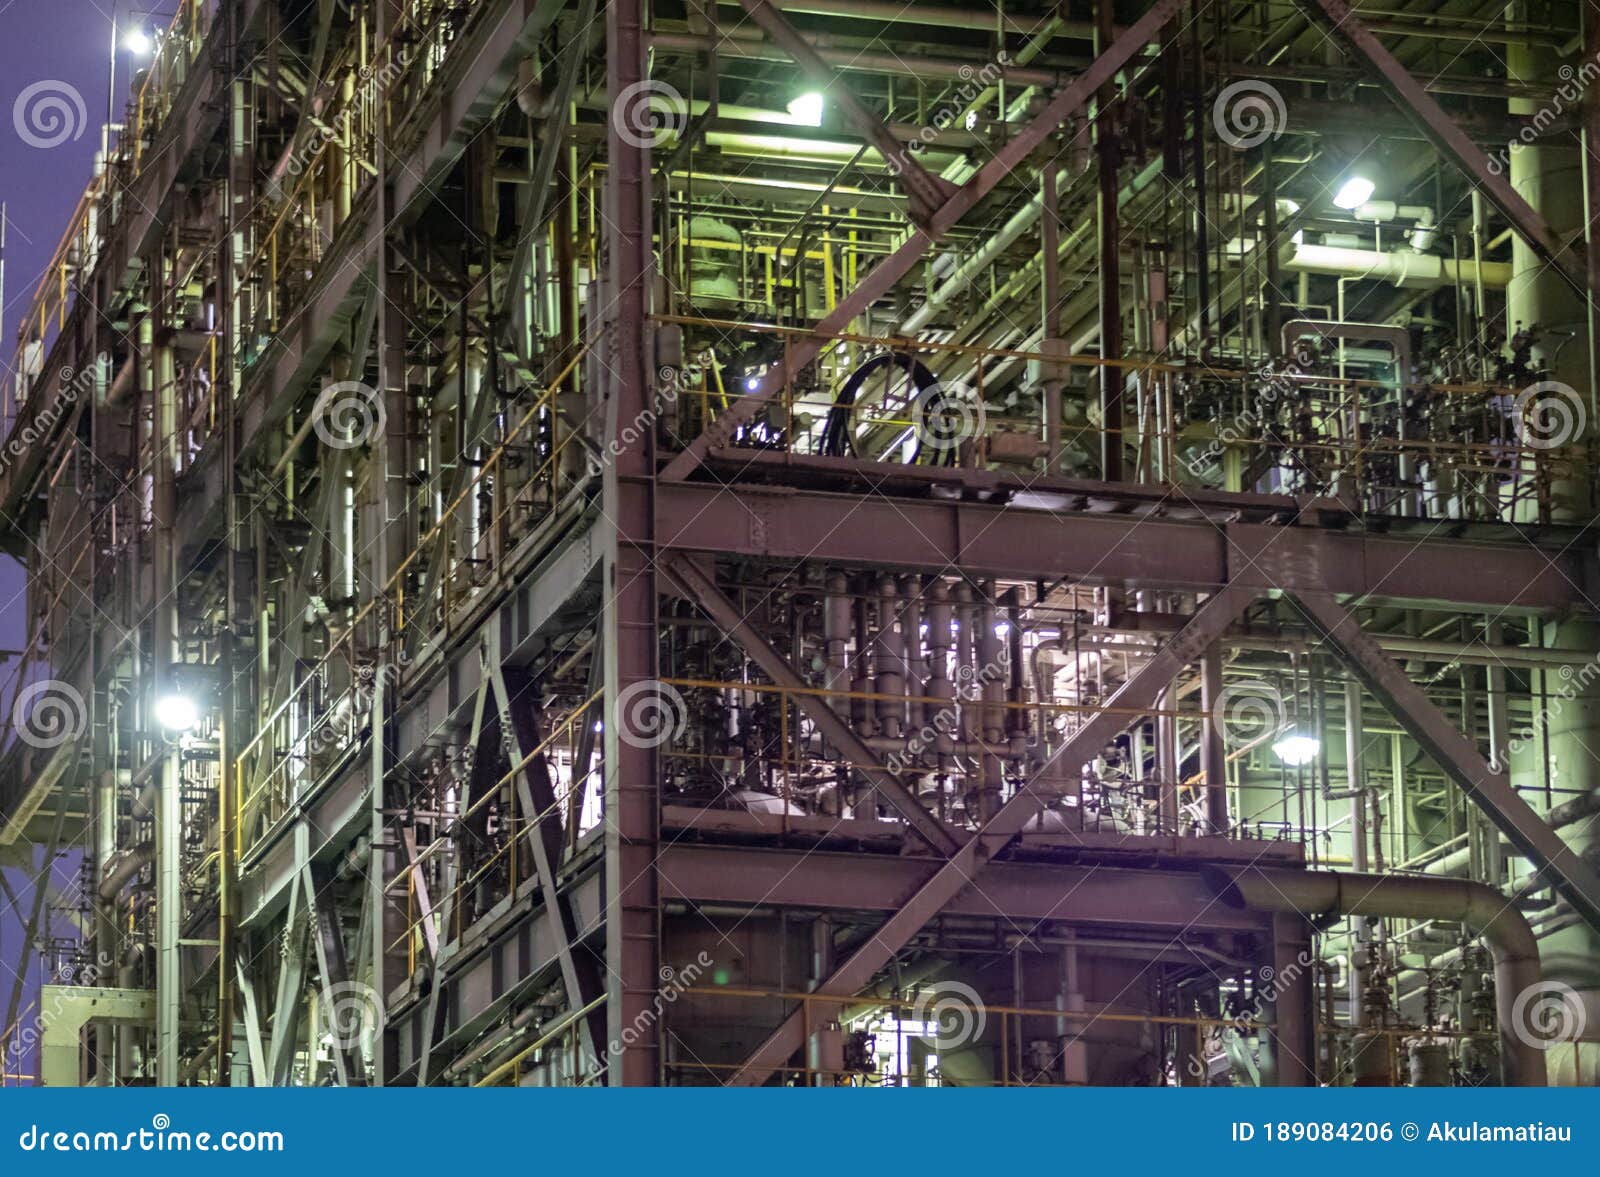 Kawasaki Factory at Night, Japan Editorial Photo - Image of factory, chemical: